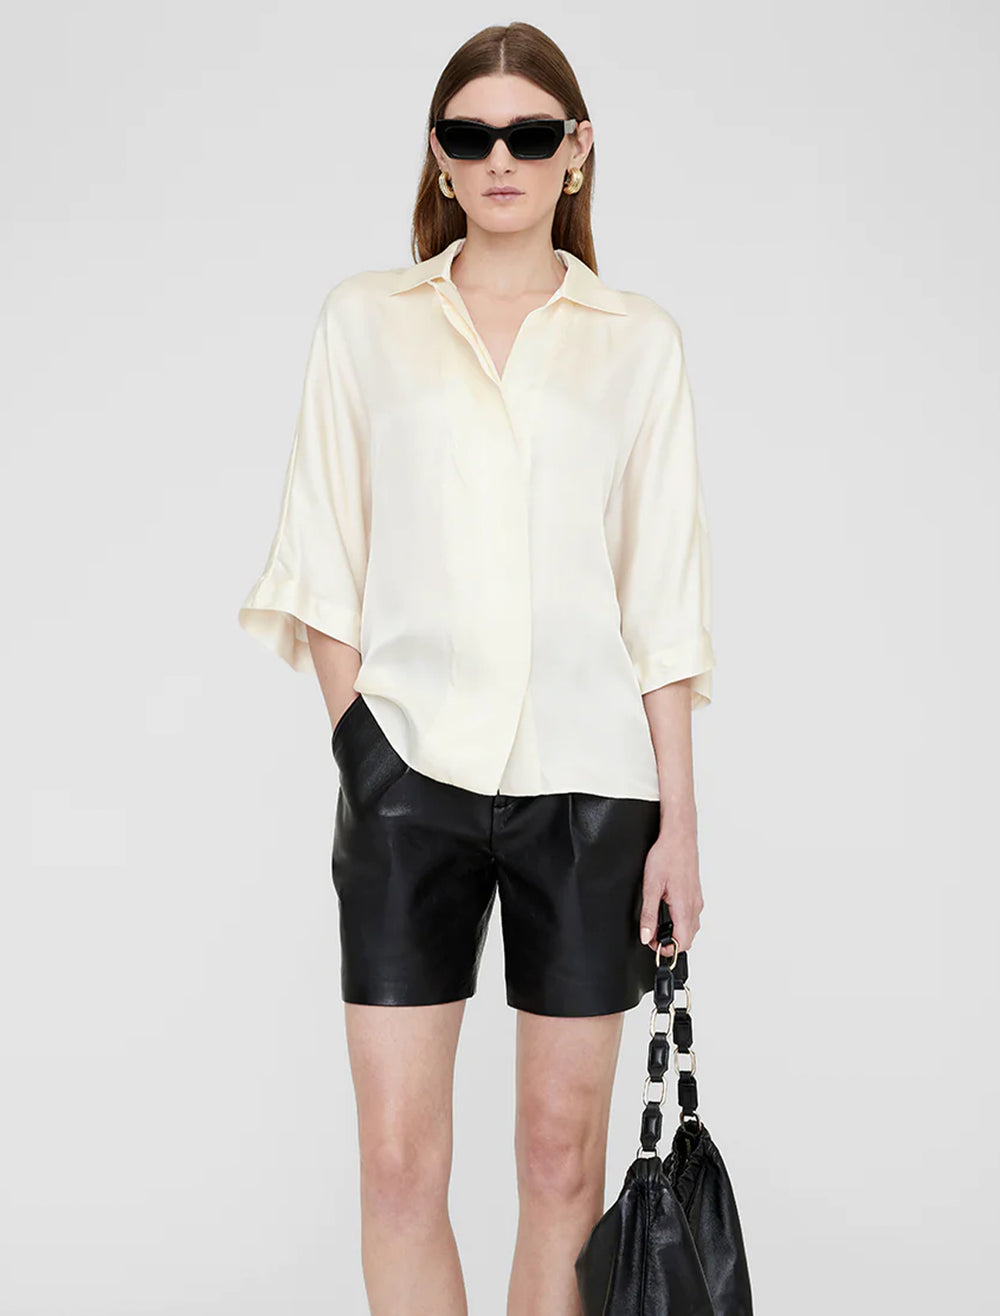 Model wearing Anine Bing's julia blouse in ivory.